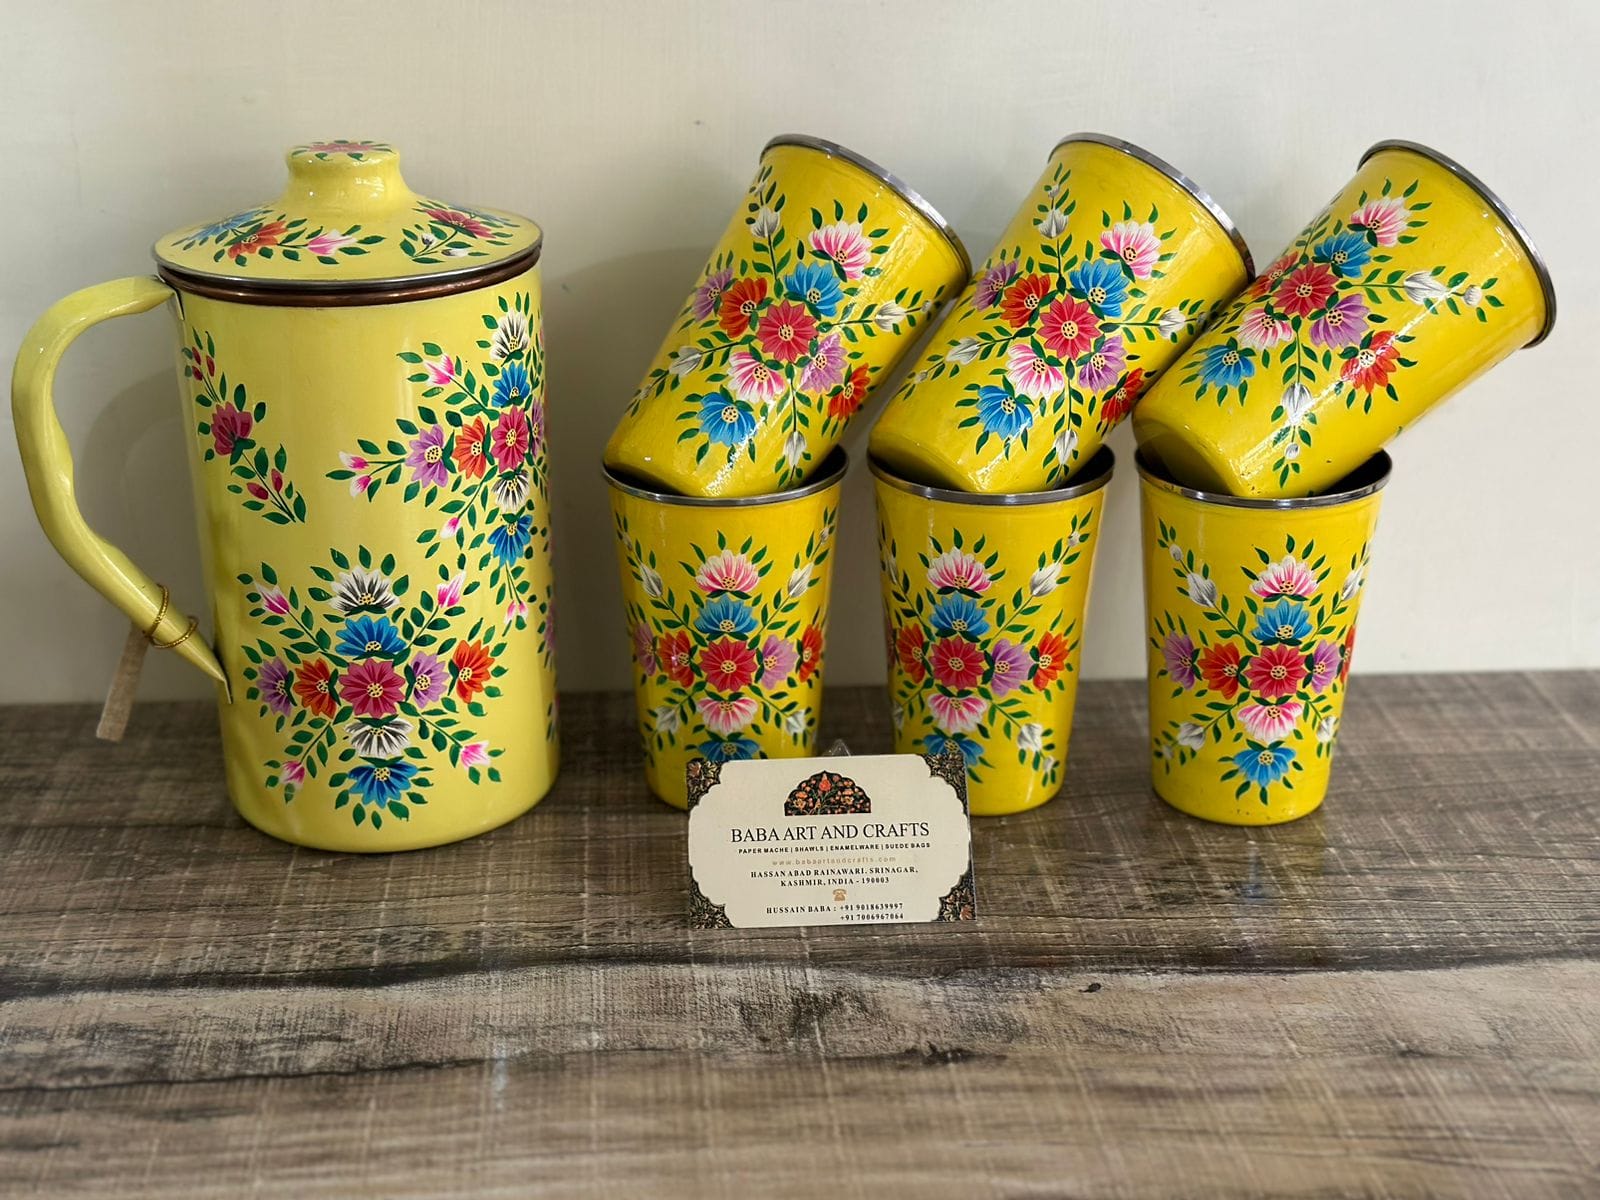 Hand painted jug set, Enamel Ware utensils,Enamelware jug set with 6 hand painted steel glass , kashmiri enamelware, hand painted pitcher